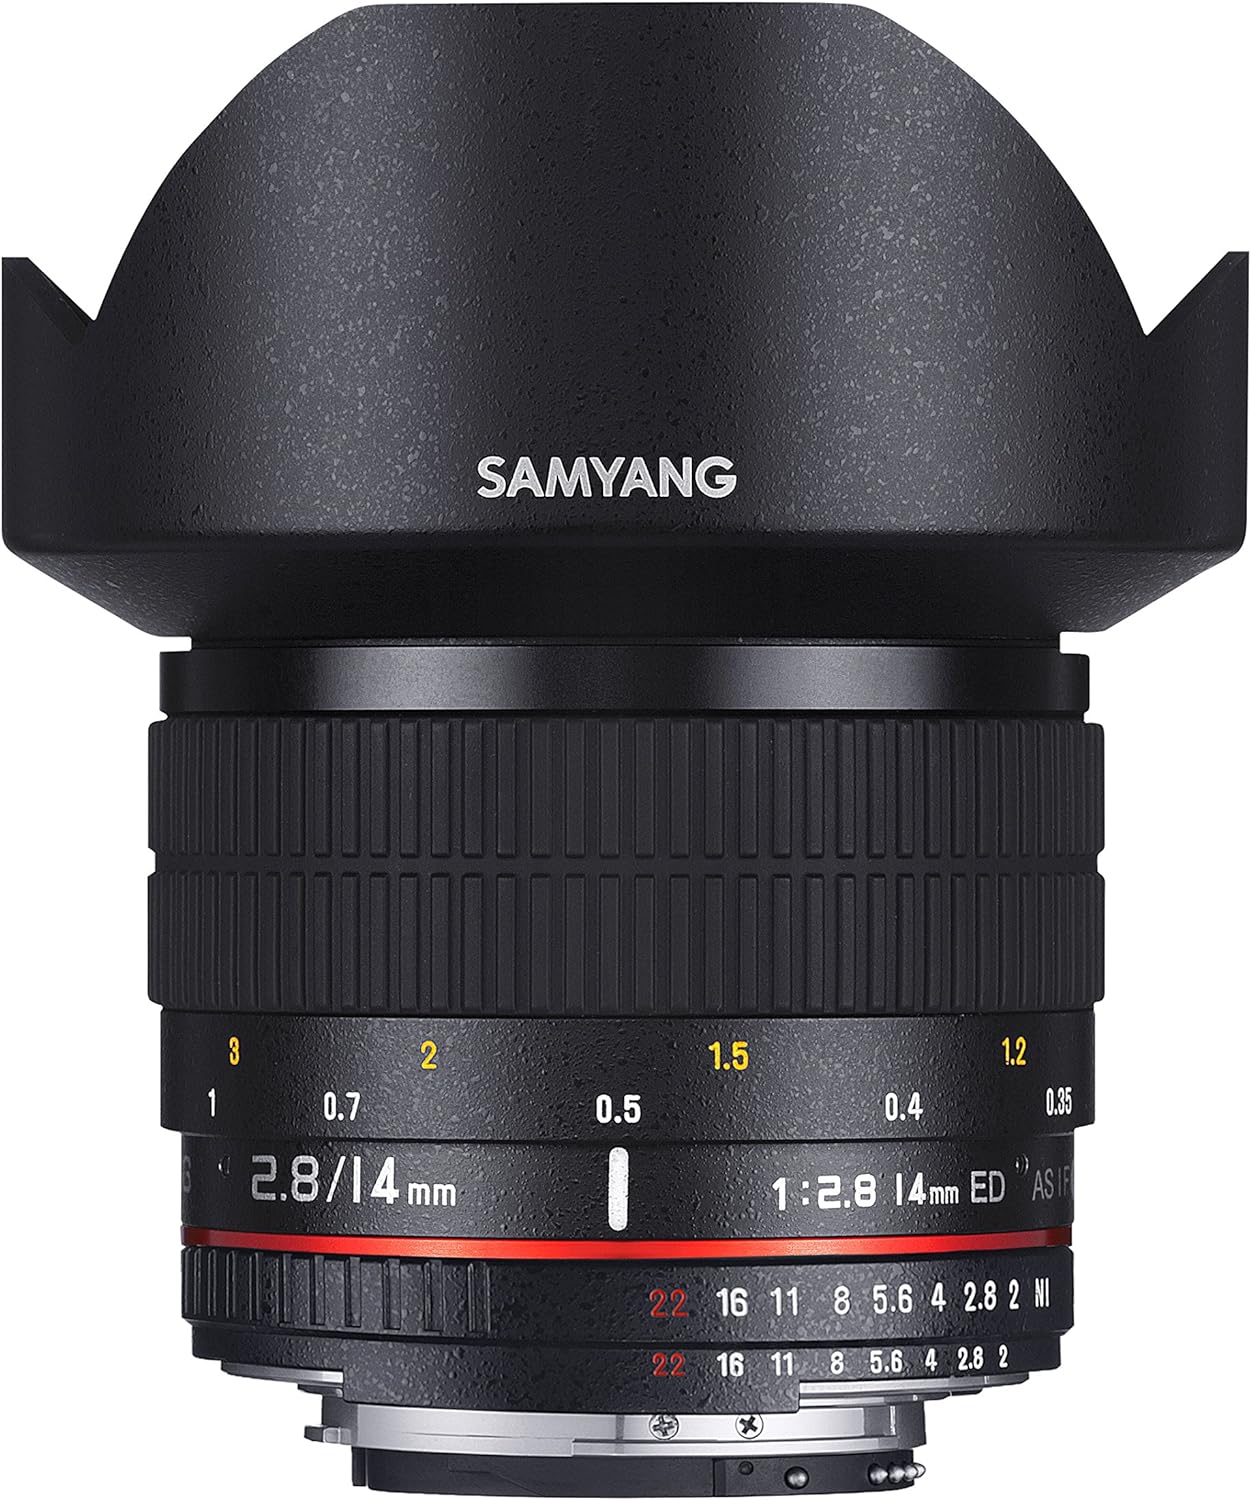 Samyang 14mm f/2.8 ED AS IF UMC Lens for Canon EF